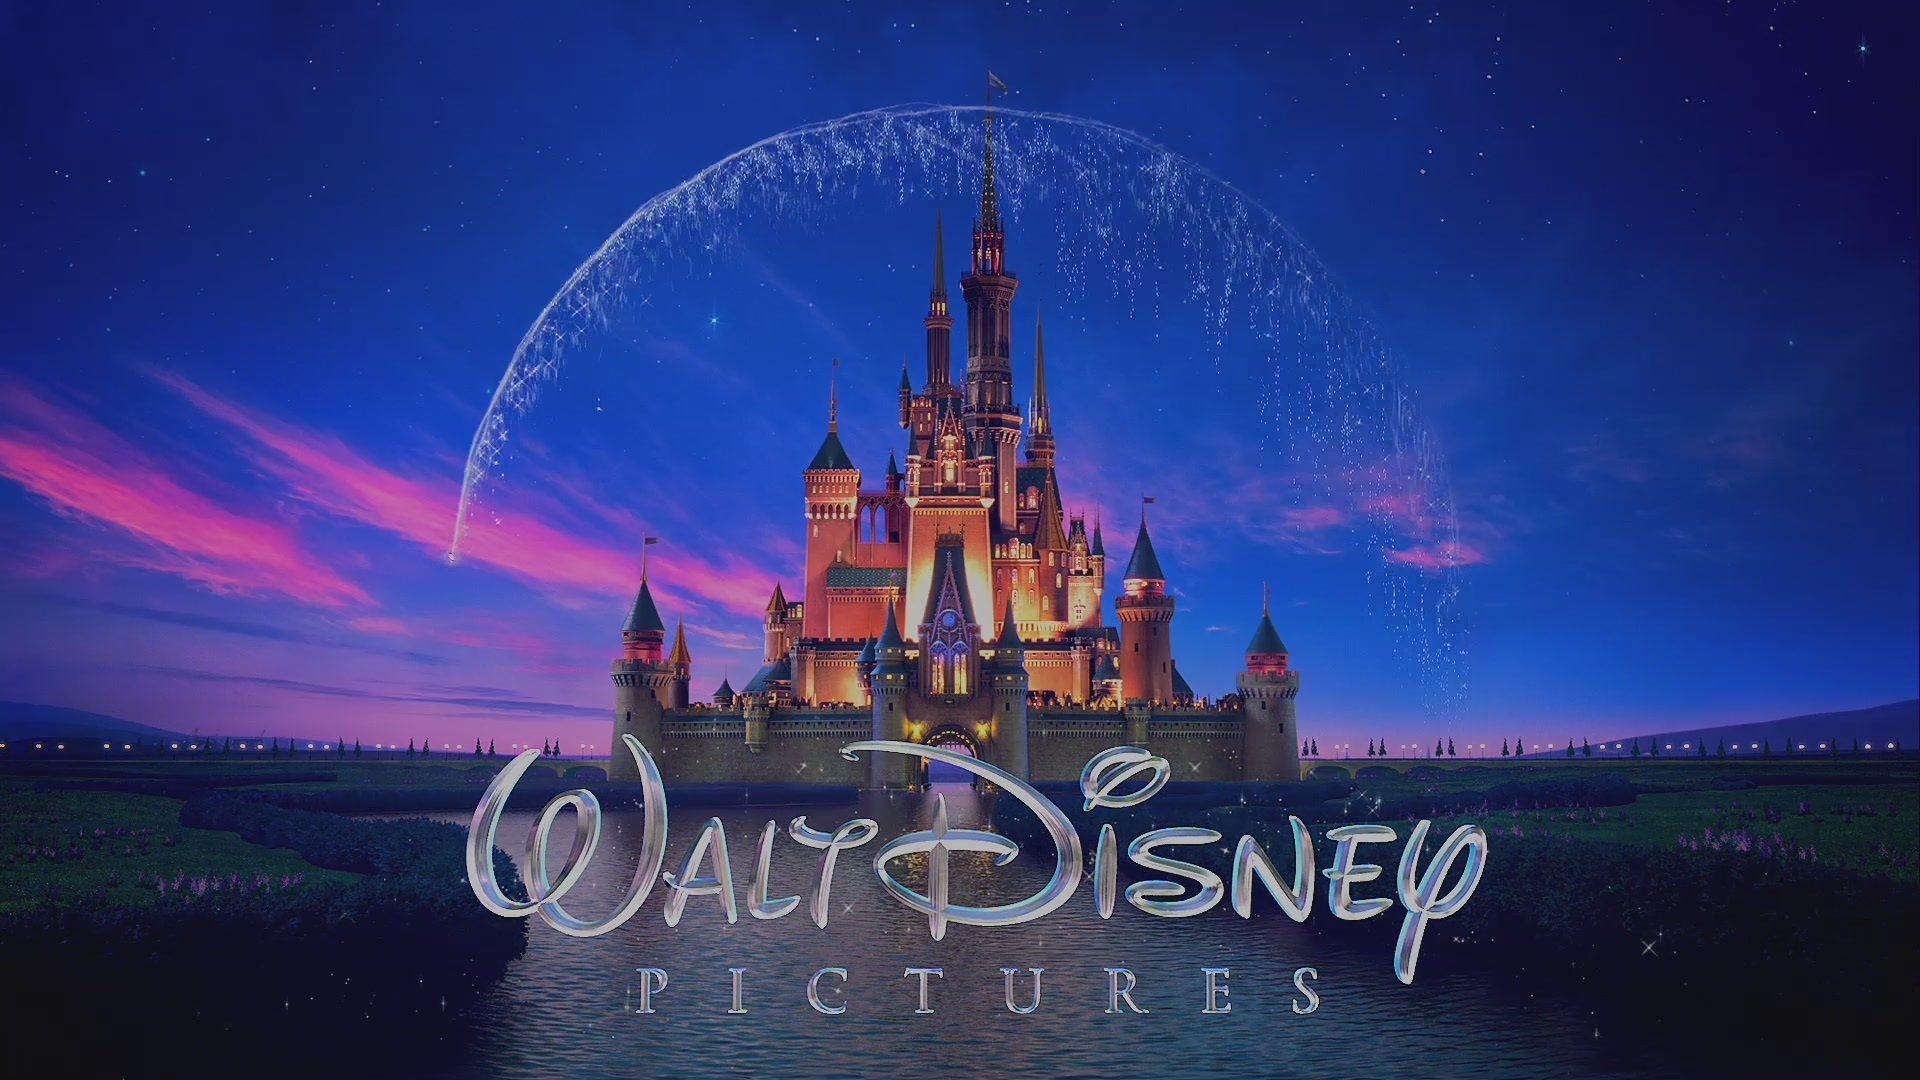 Disney Animation, High-resolution wallpapers, Captivating designs, Visual splendor, 1920x1080 Full HD Desktop